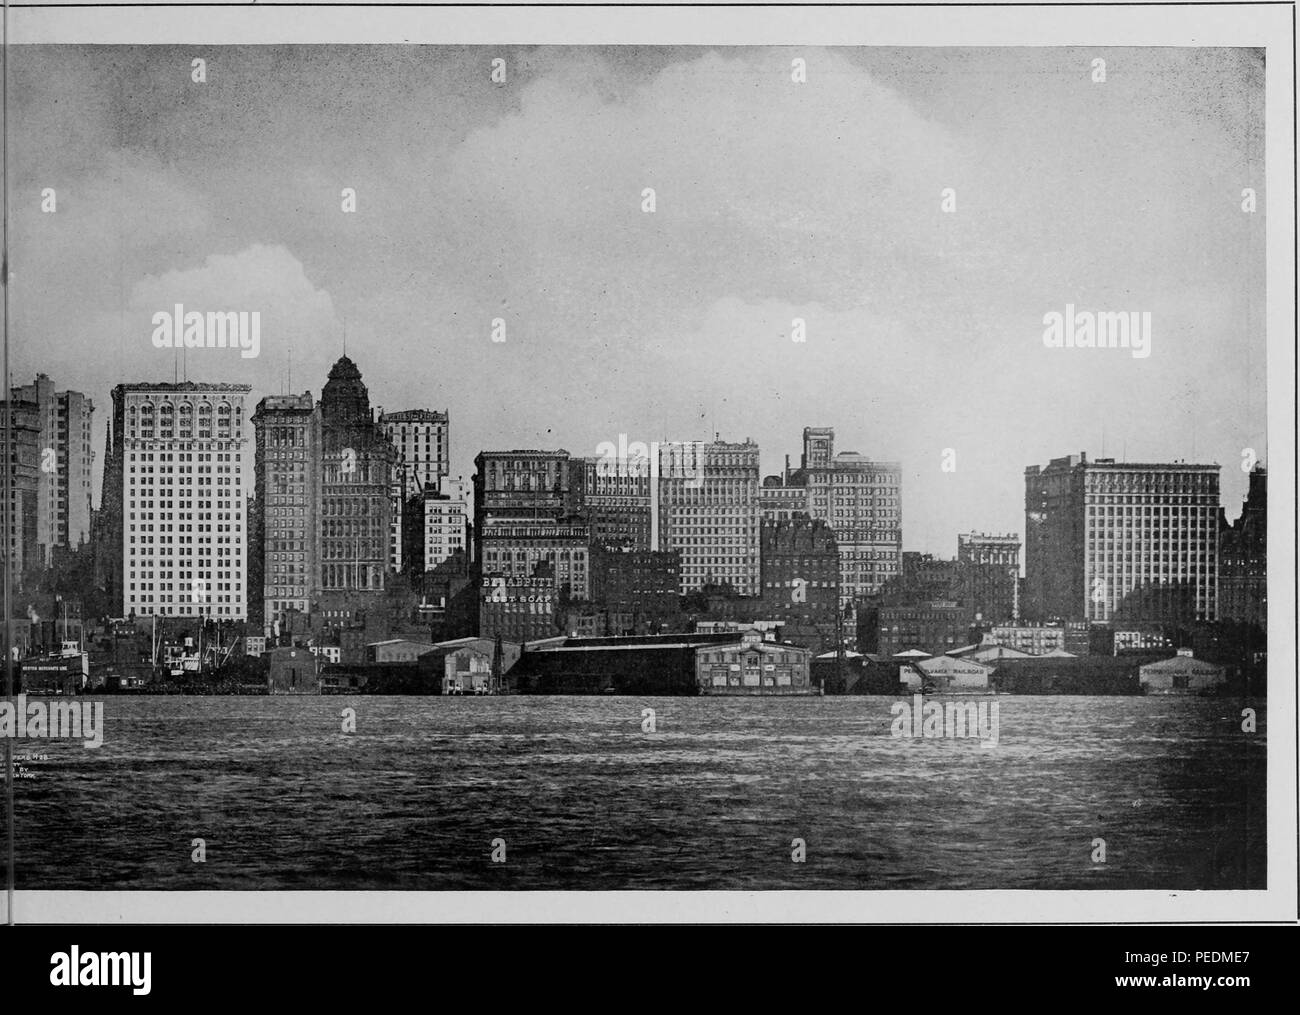 Fotogravur auf die Skyline von New York, New York Hafen im Vordergrund, 1912 sichtbar. Mit freundlicher Genehmigung Internet Archive. () Stockfoto